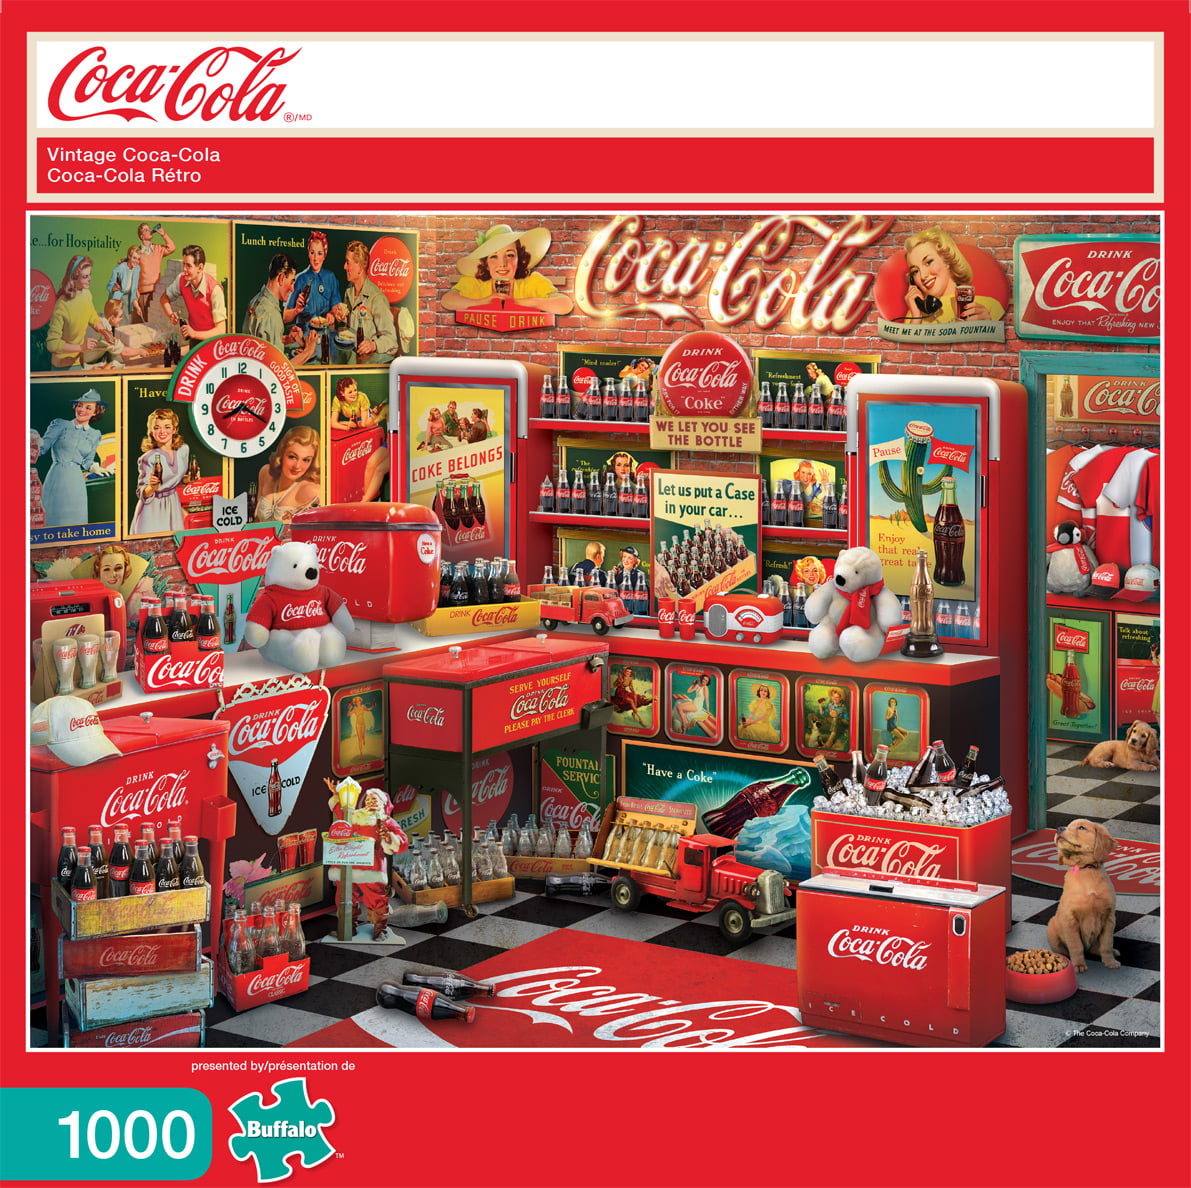 sólido Perplejo Año Nuevo Lunar Buffalo Games - Coca-Cola - Vintage Coca-Cola - 1000 Piece Jigsaw Puzzle -  Walmart.com